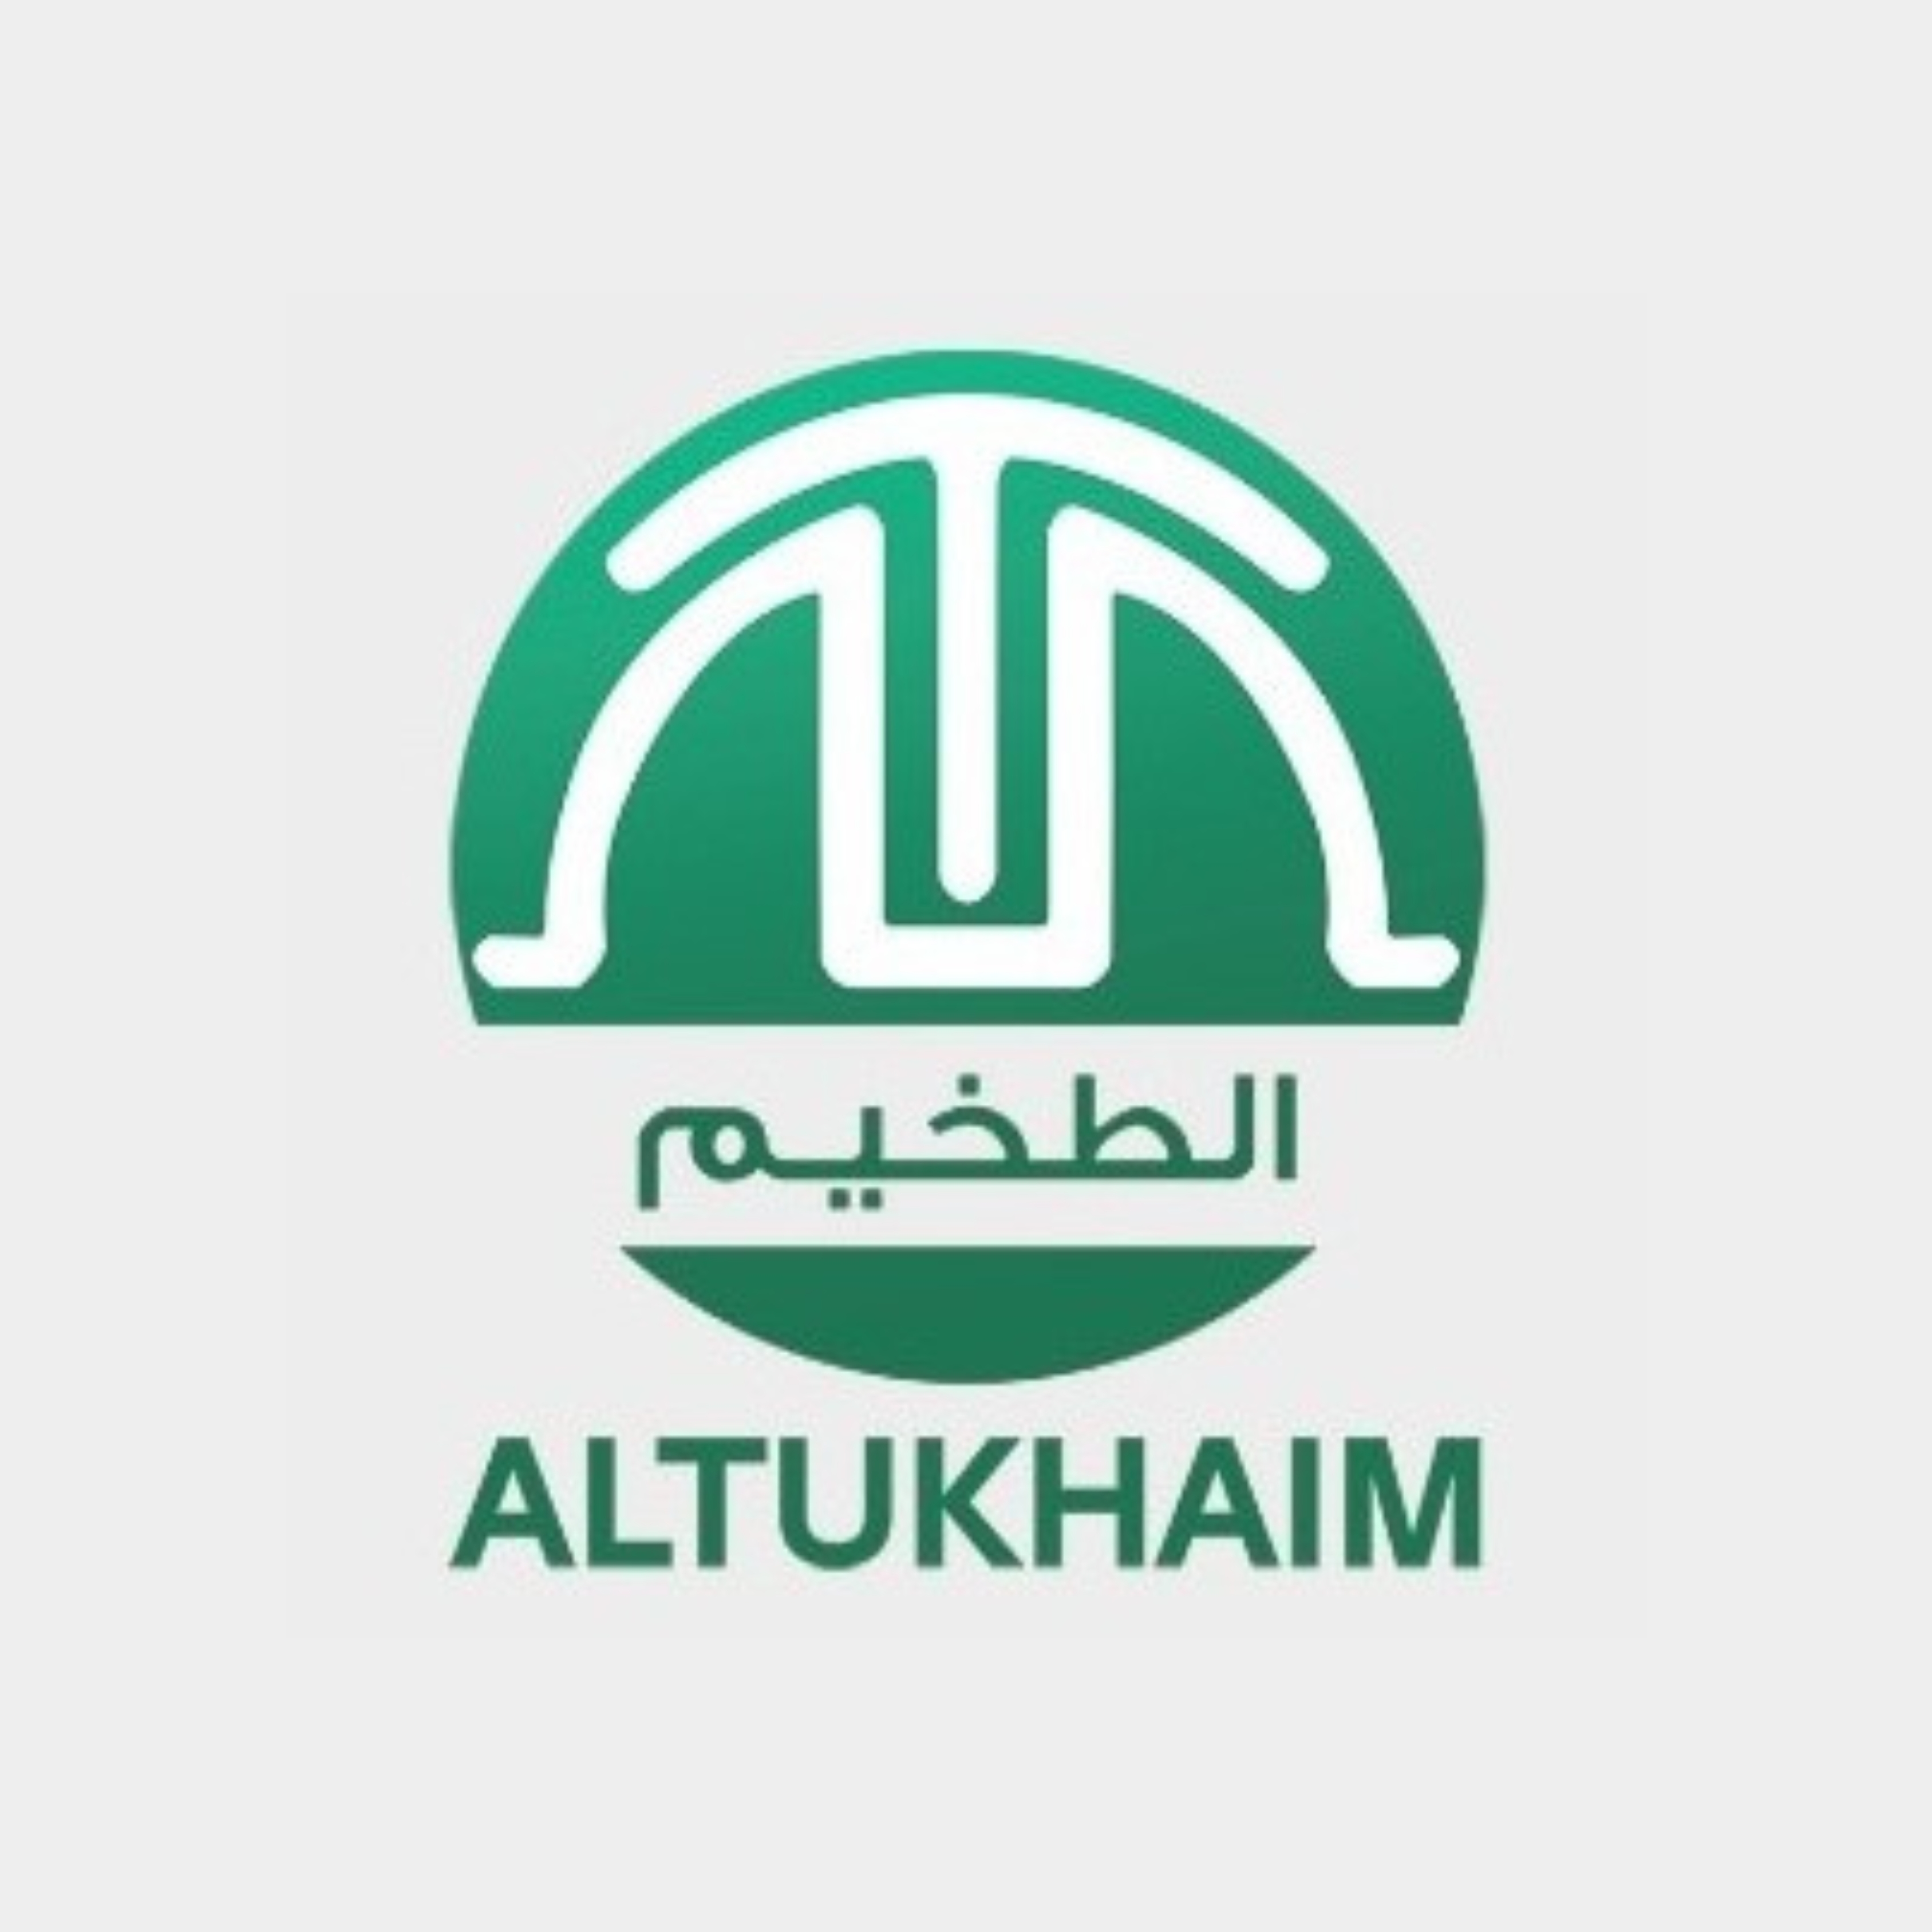 Abdullah Mohhamed Althukaim